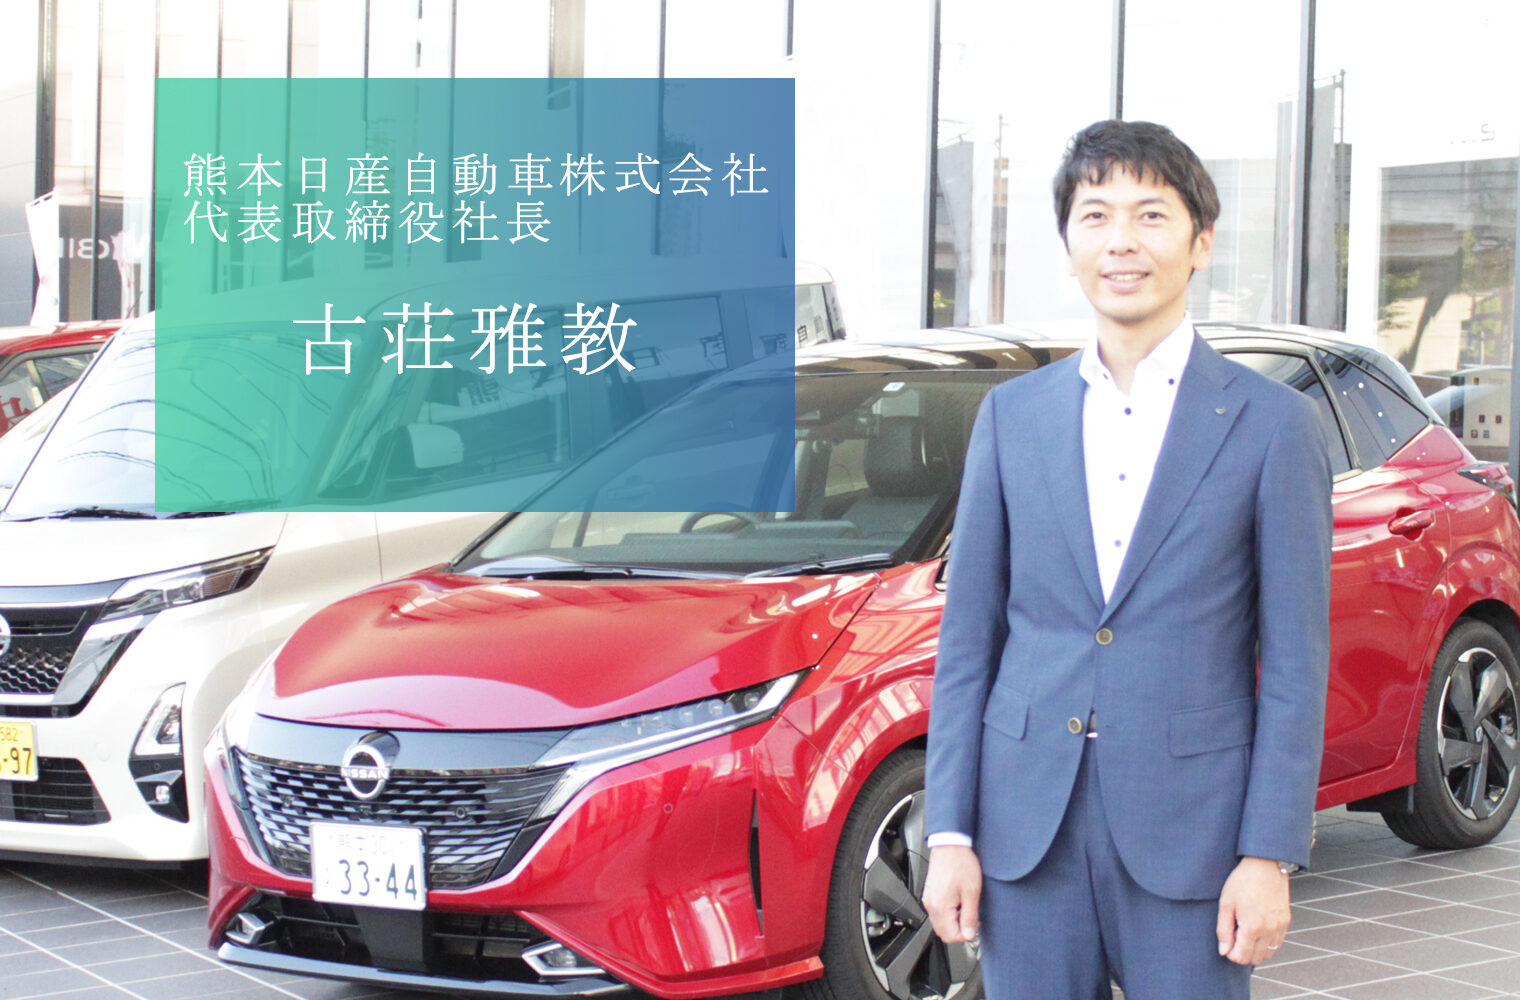 お客様にとって熊本のオンリーワン、販売会社として九州NO.1を目指す、熊本日産自動車株式会社の古荘社長